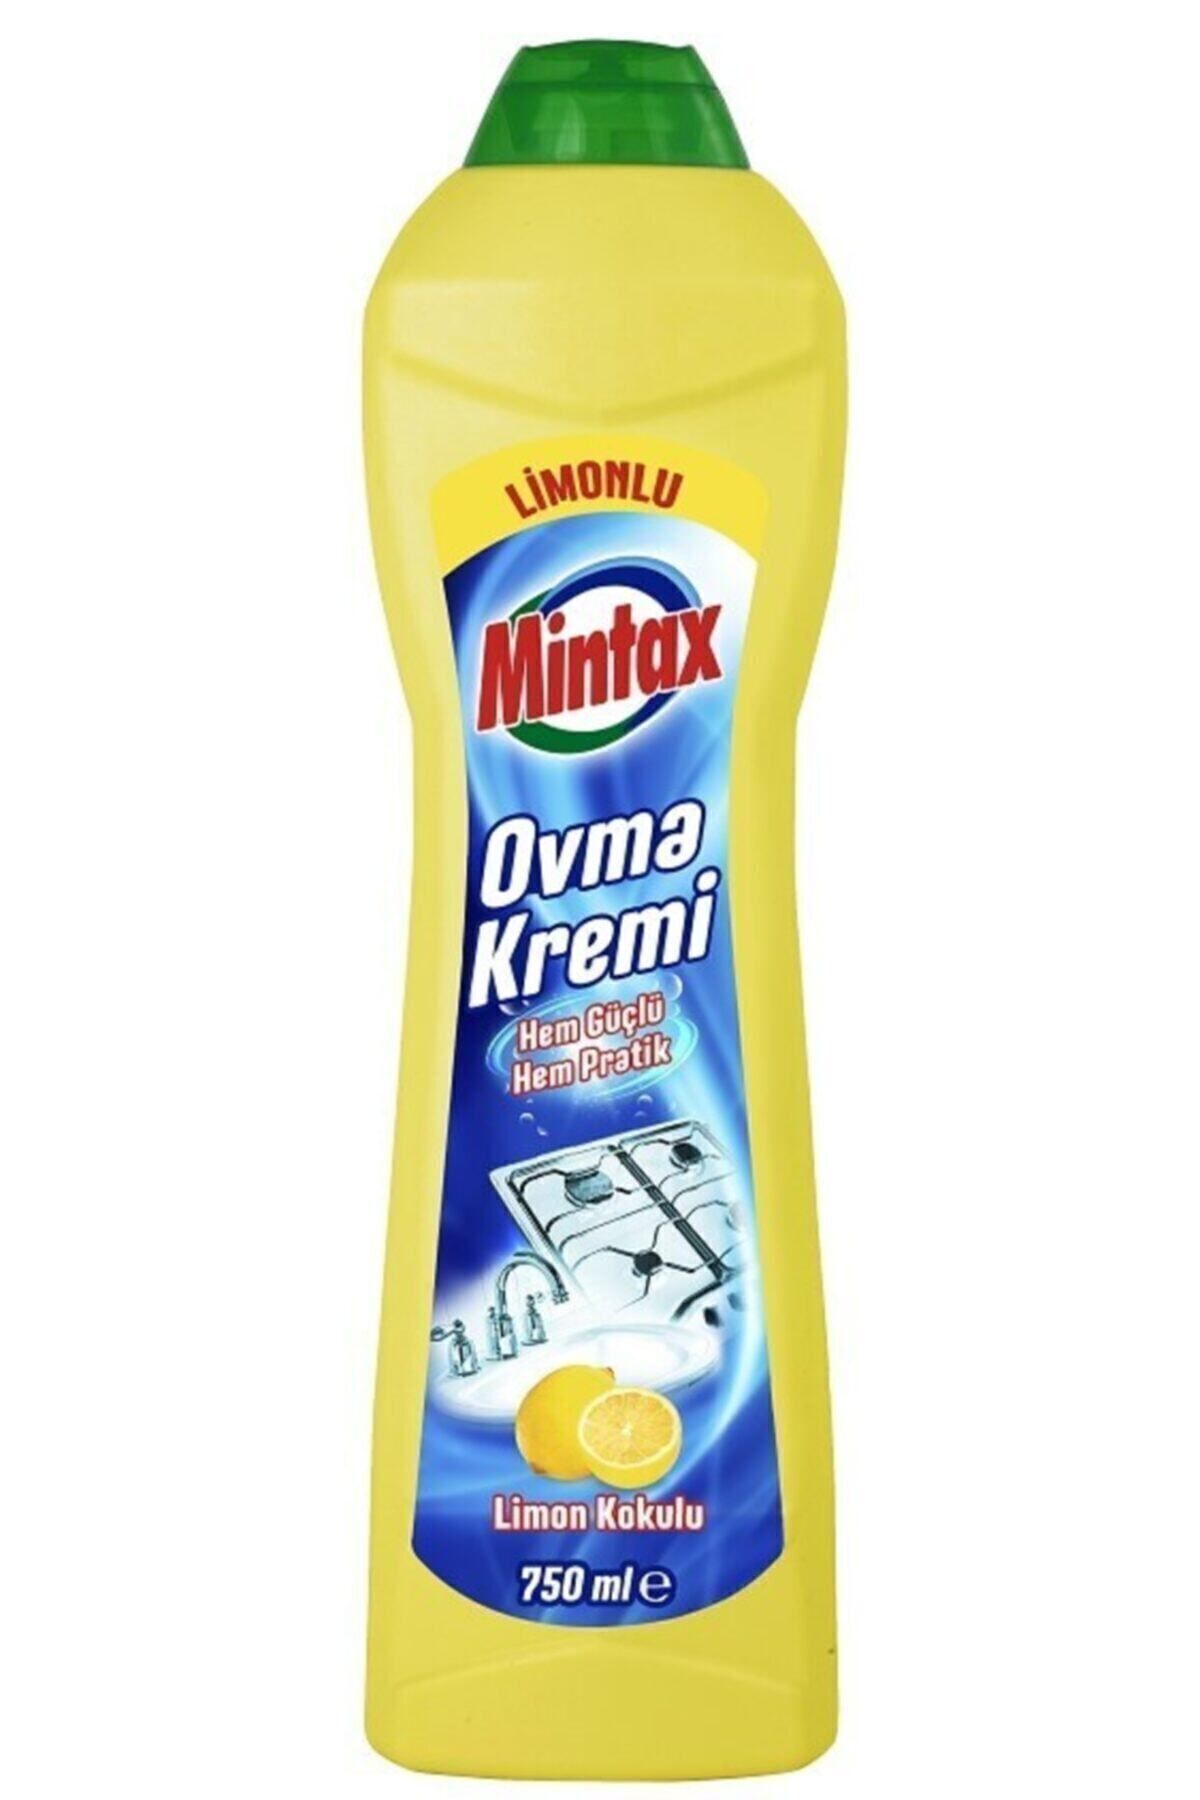 Mintax Ovma Kremi Limonlu 750 ml